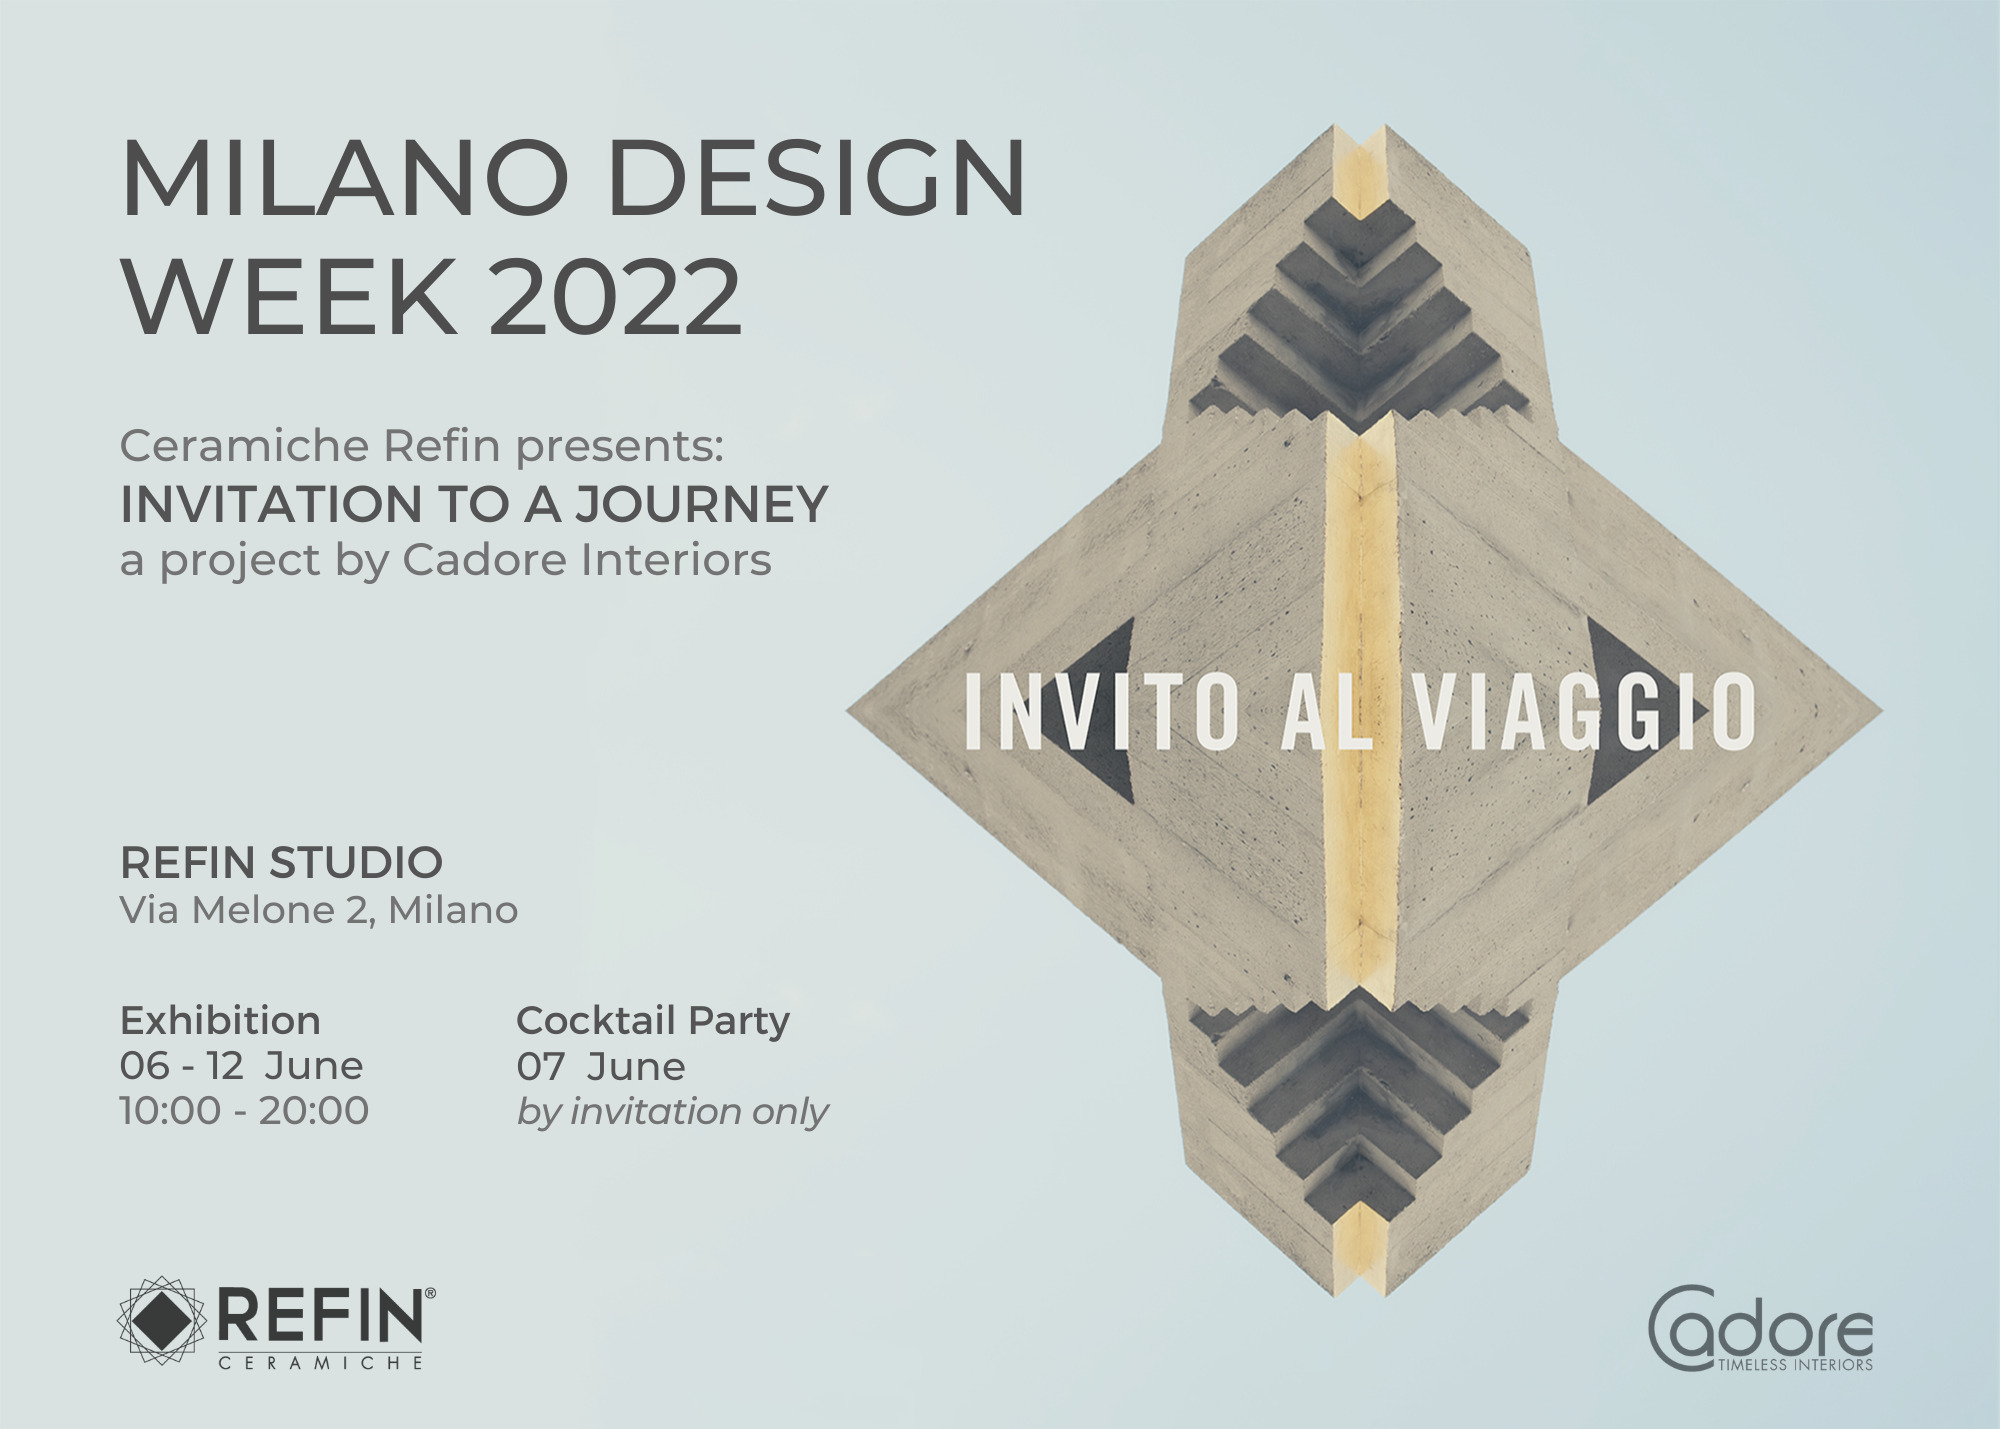 Milano Design Week 2022 